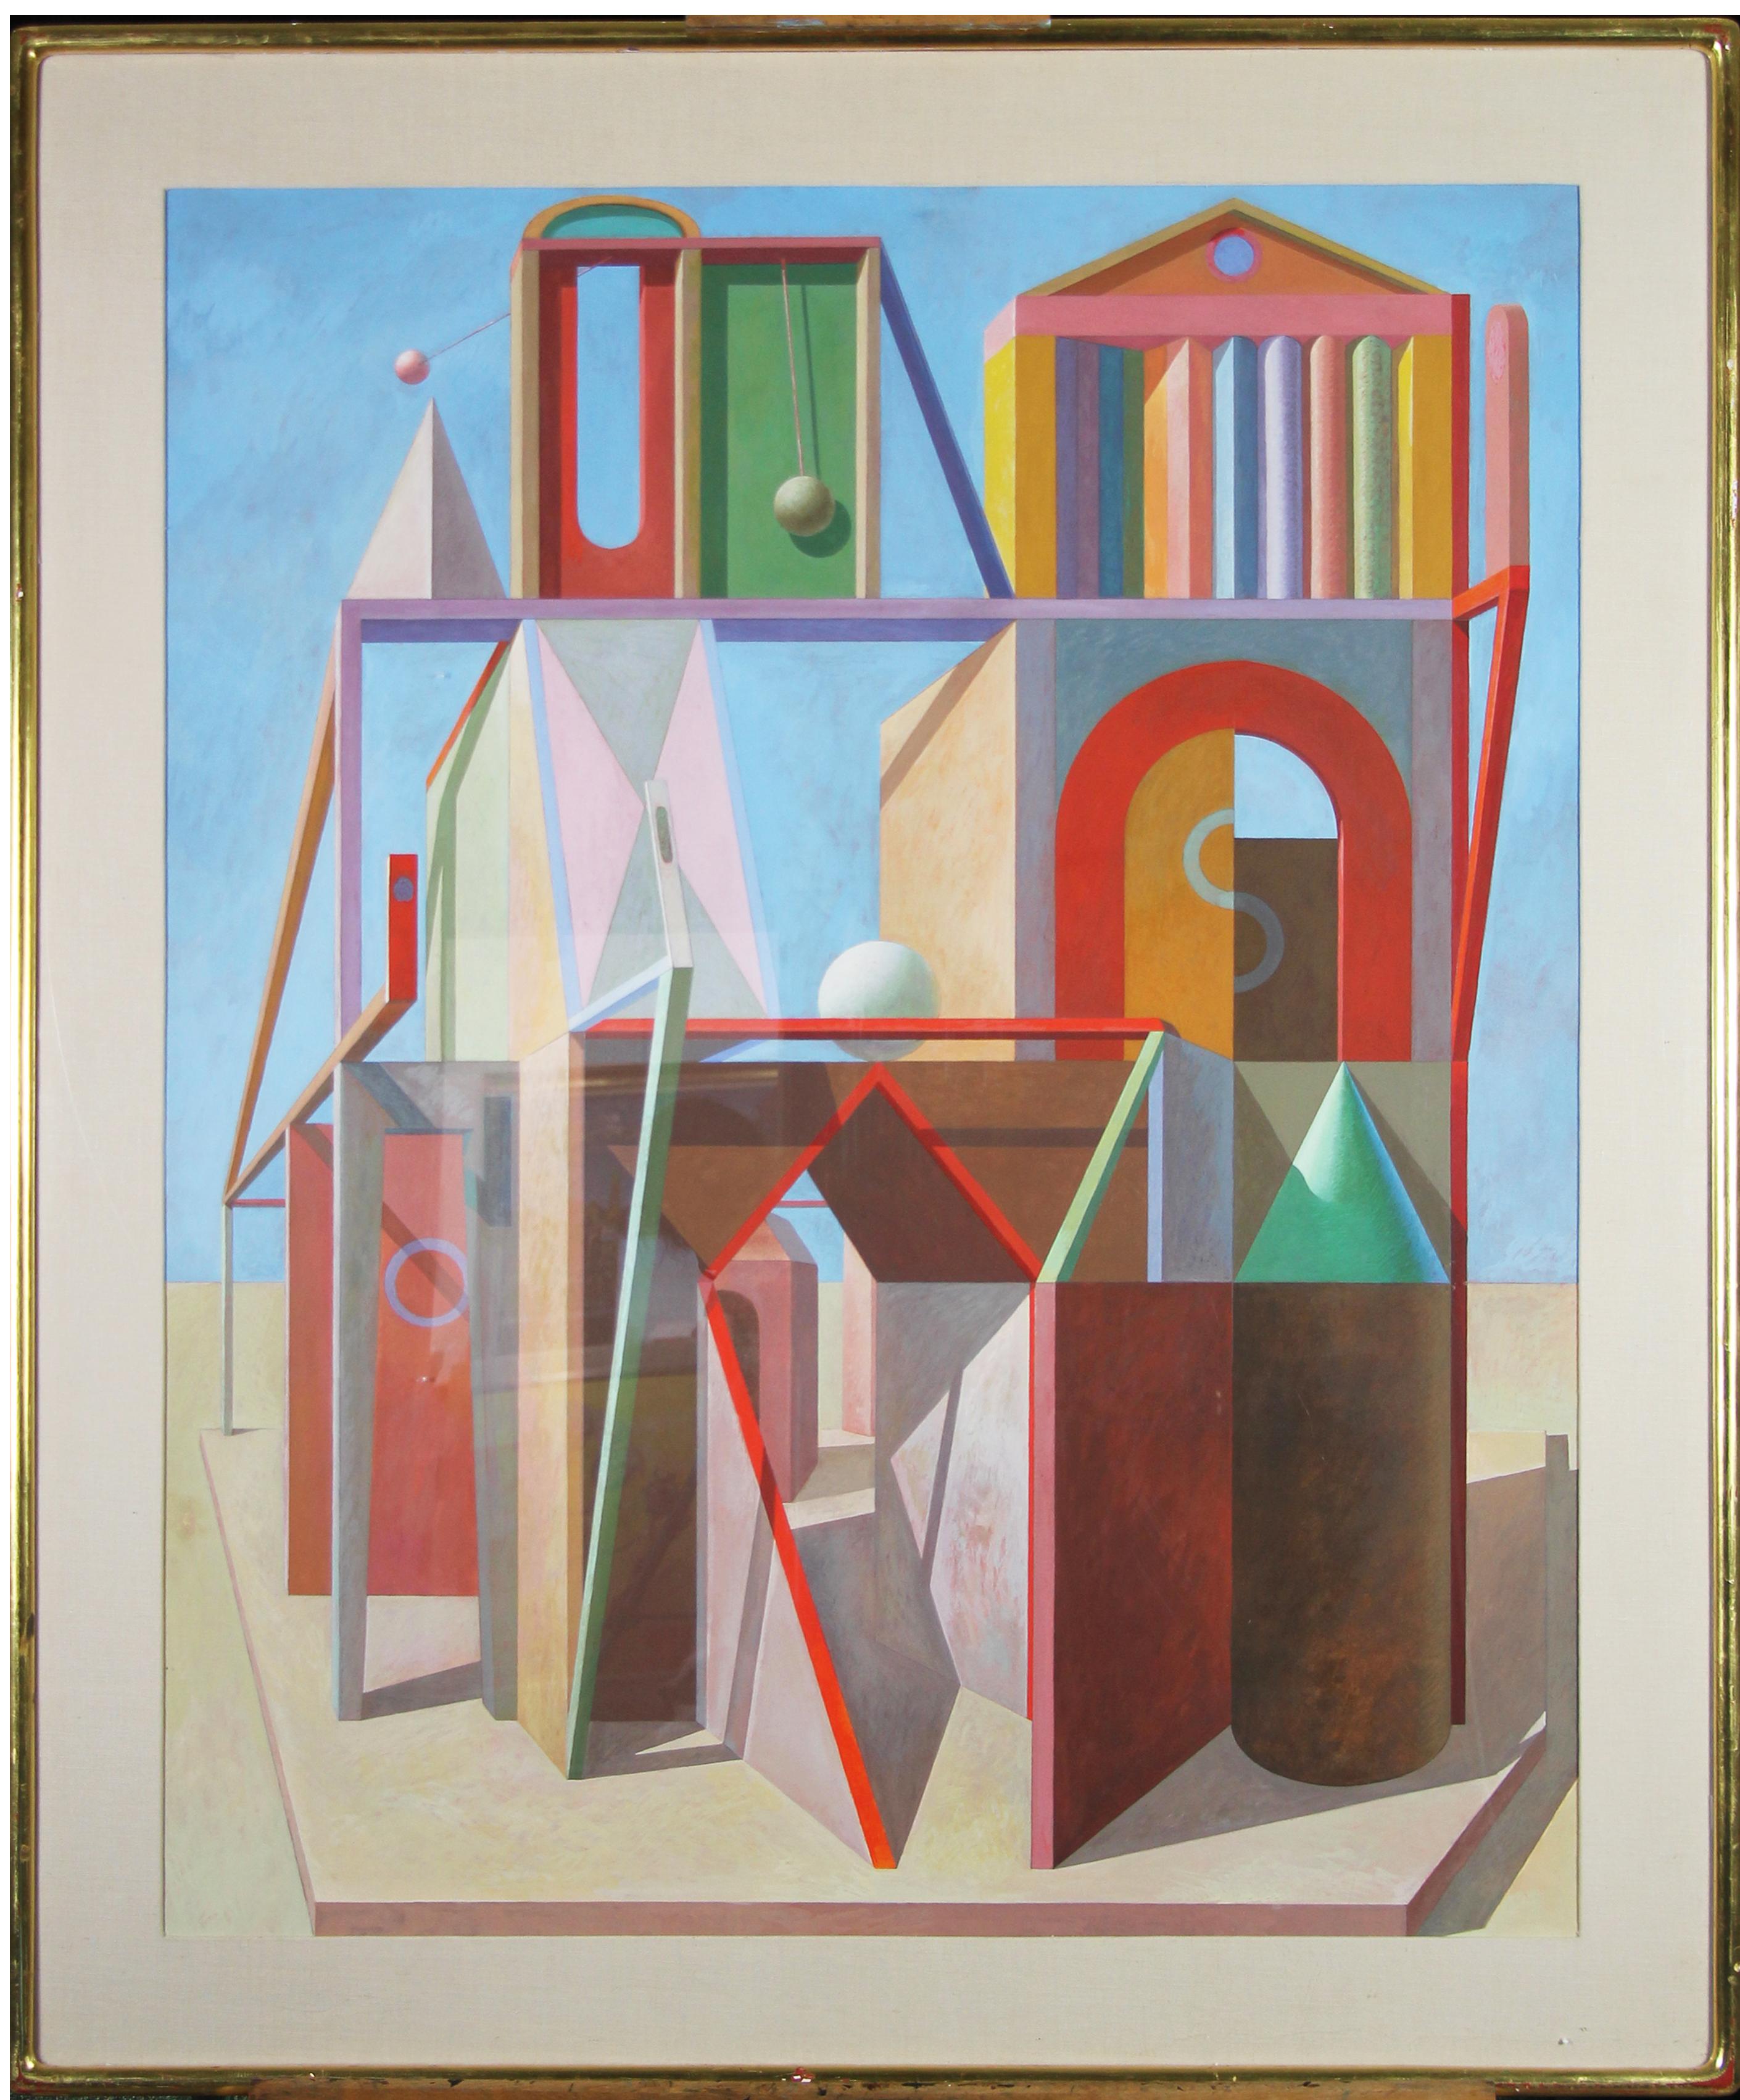 Architektonische Fantasien, Geometrisches Abstraktes in Farbe – Painting von Joseph Amarotico